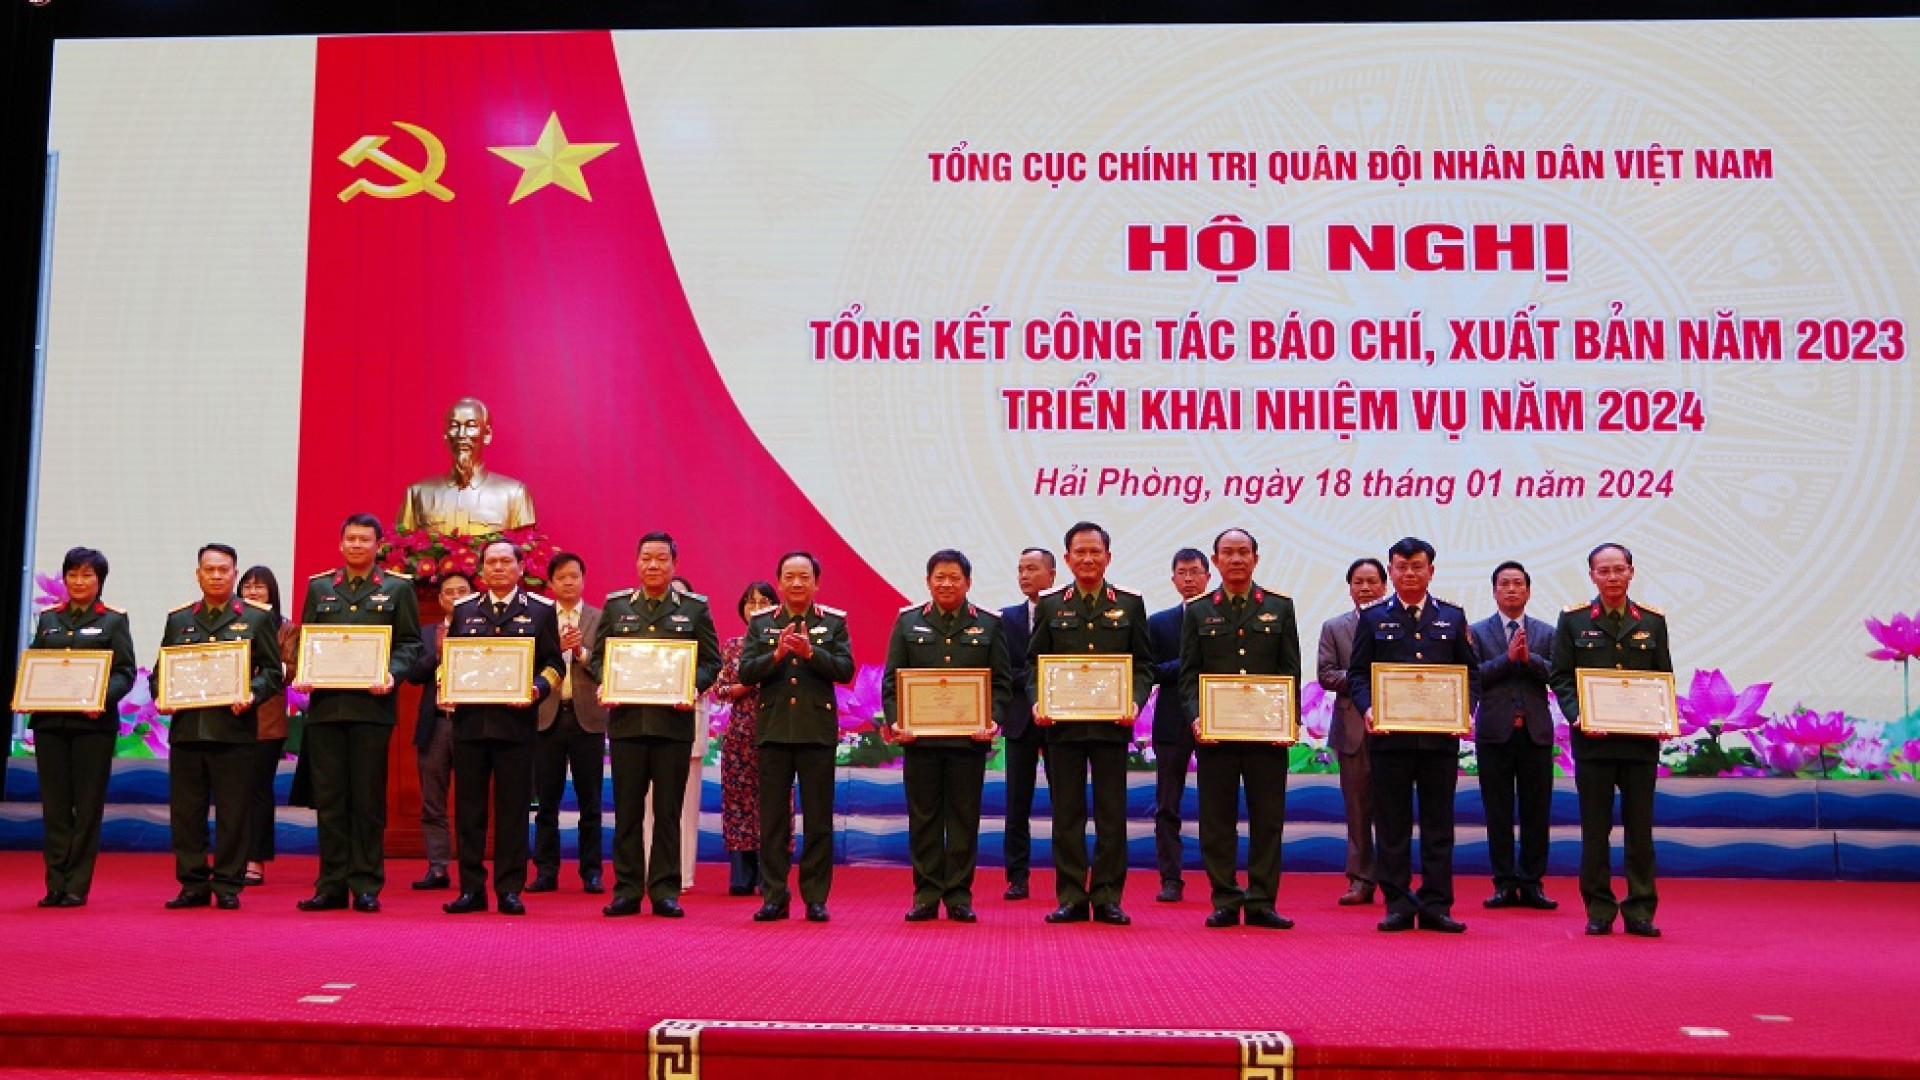 Tổng cục Chính trị QĐND Việt Nam: Tổng kết công tác báo chí, xuất bản năm 2023